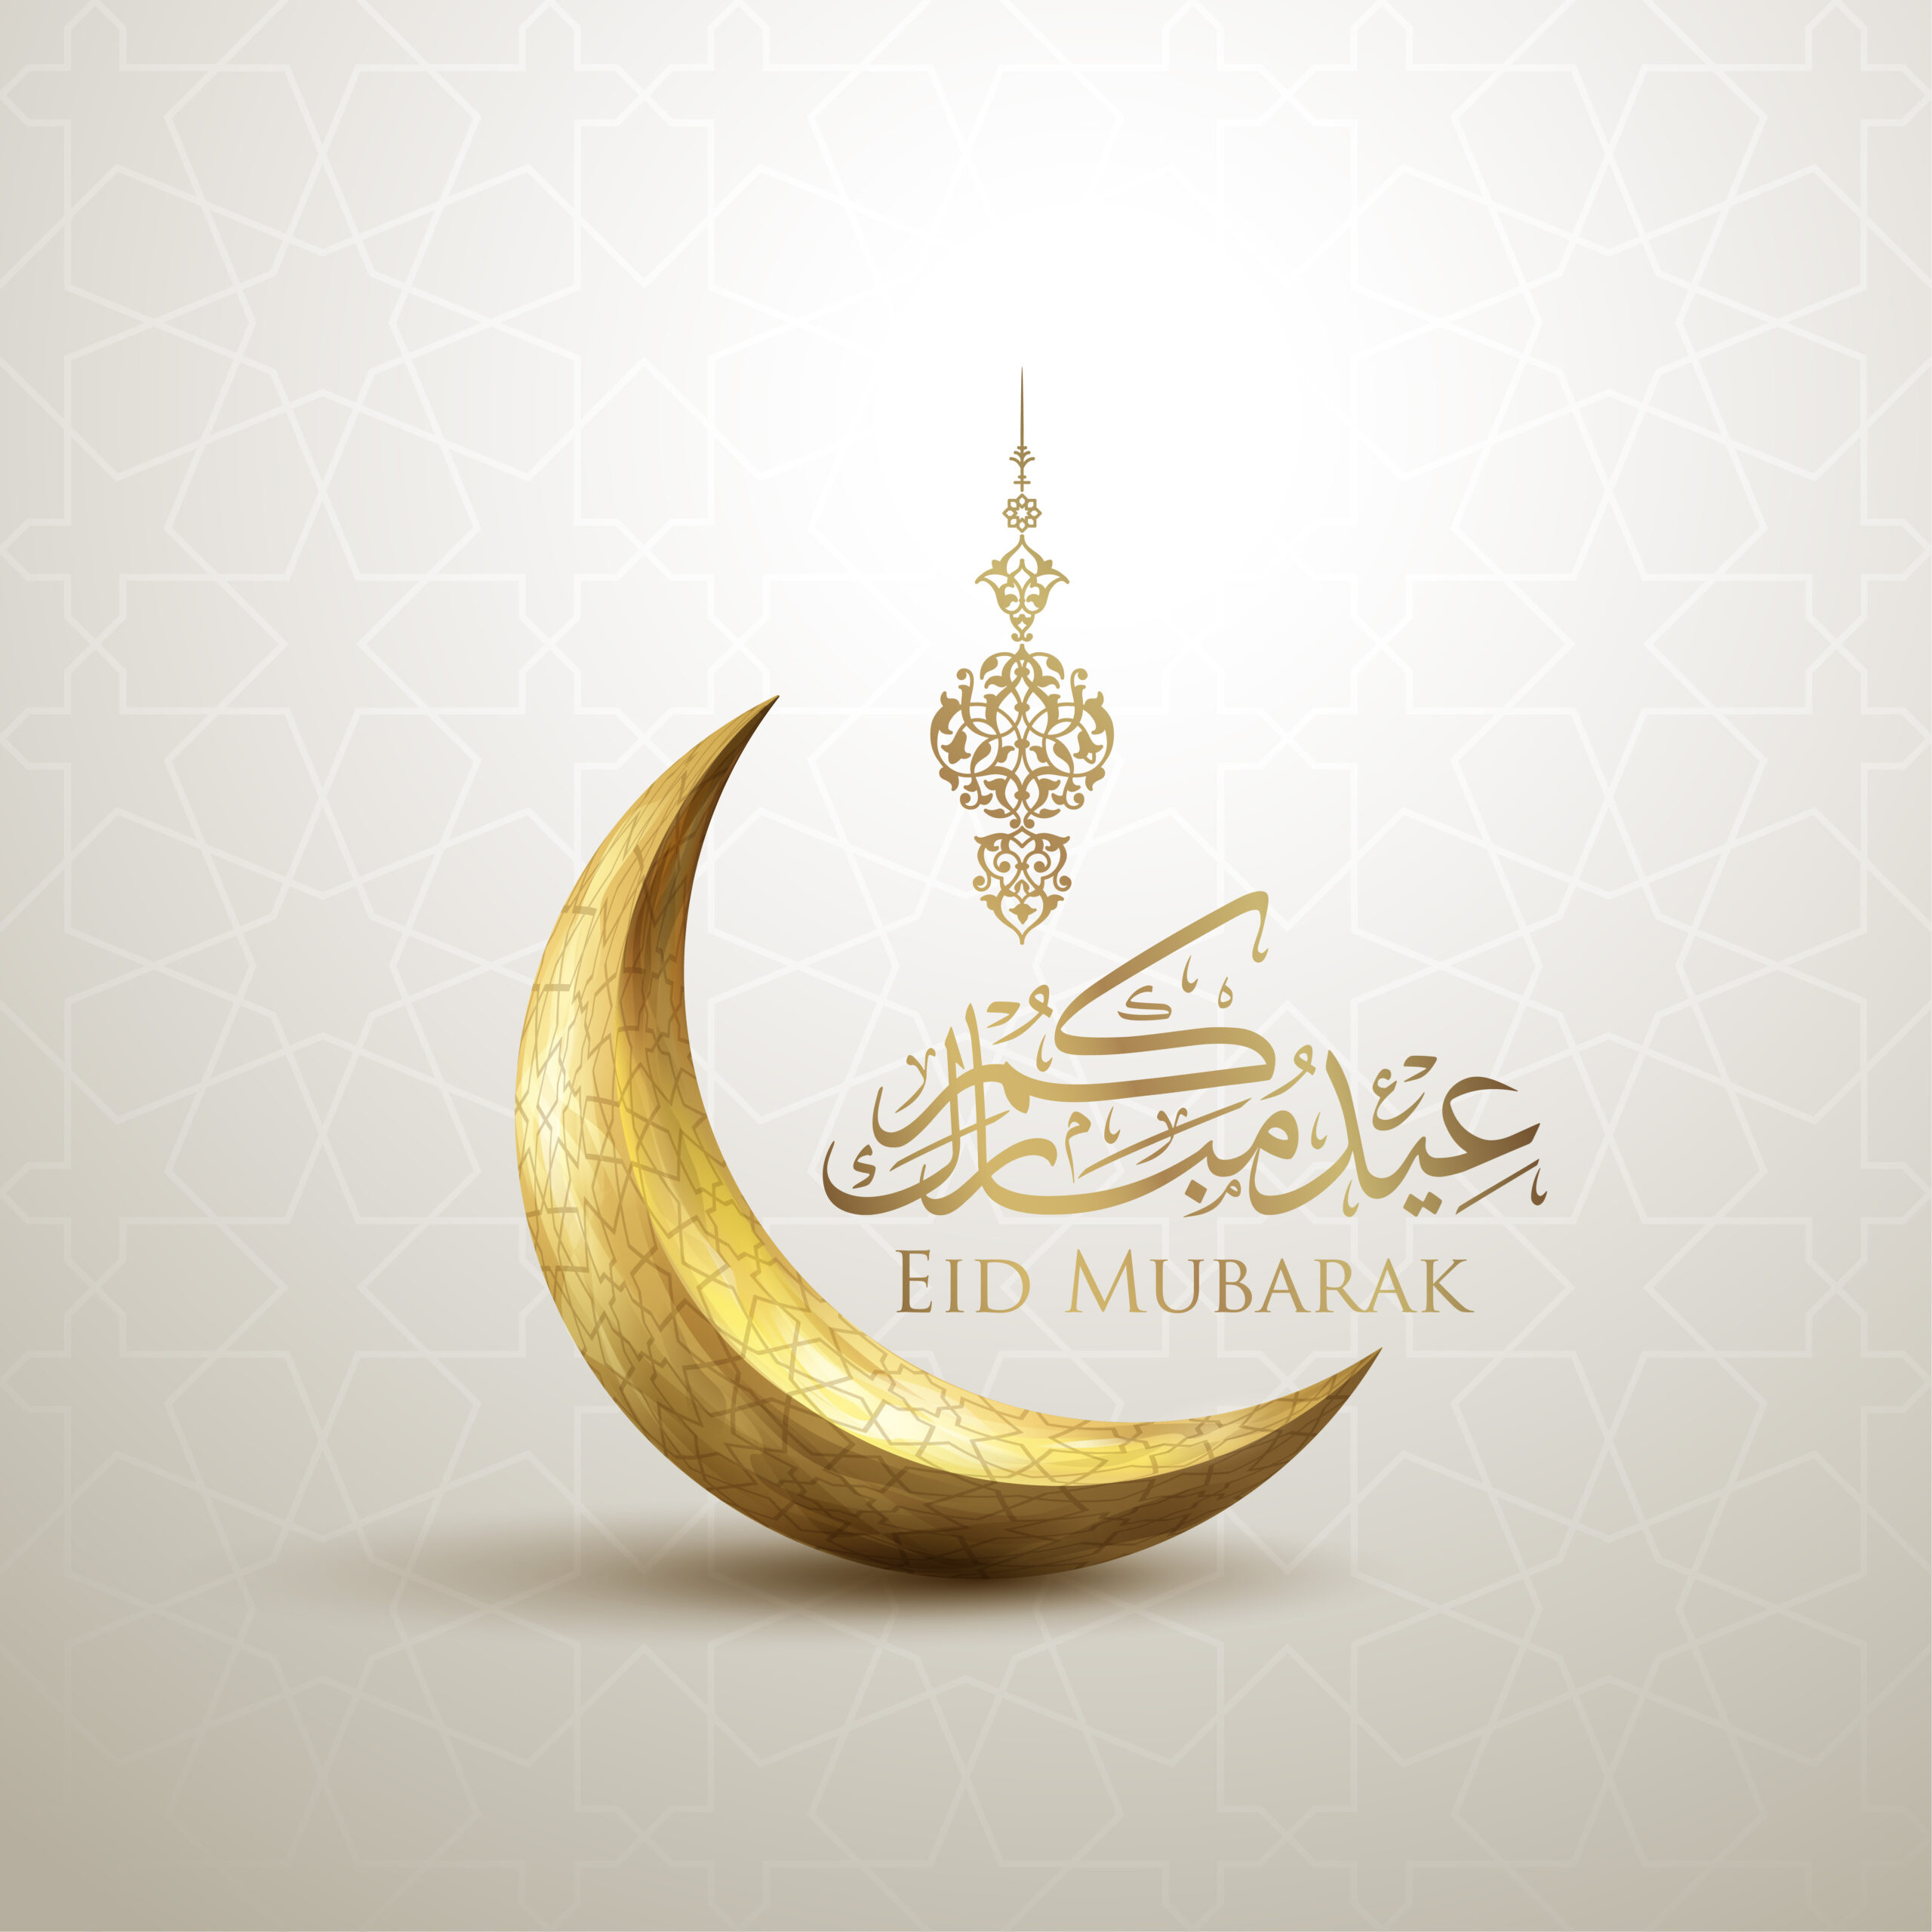 Vi på Islamiska förbundet i Linköping önskar er alla en glad Eid!!